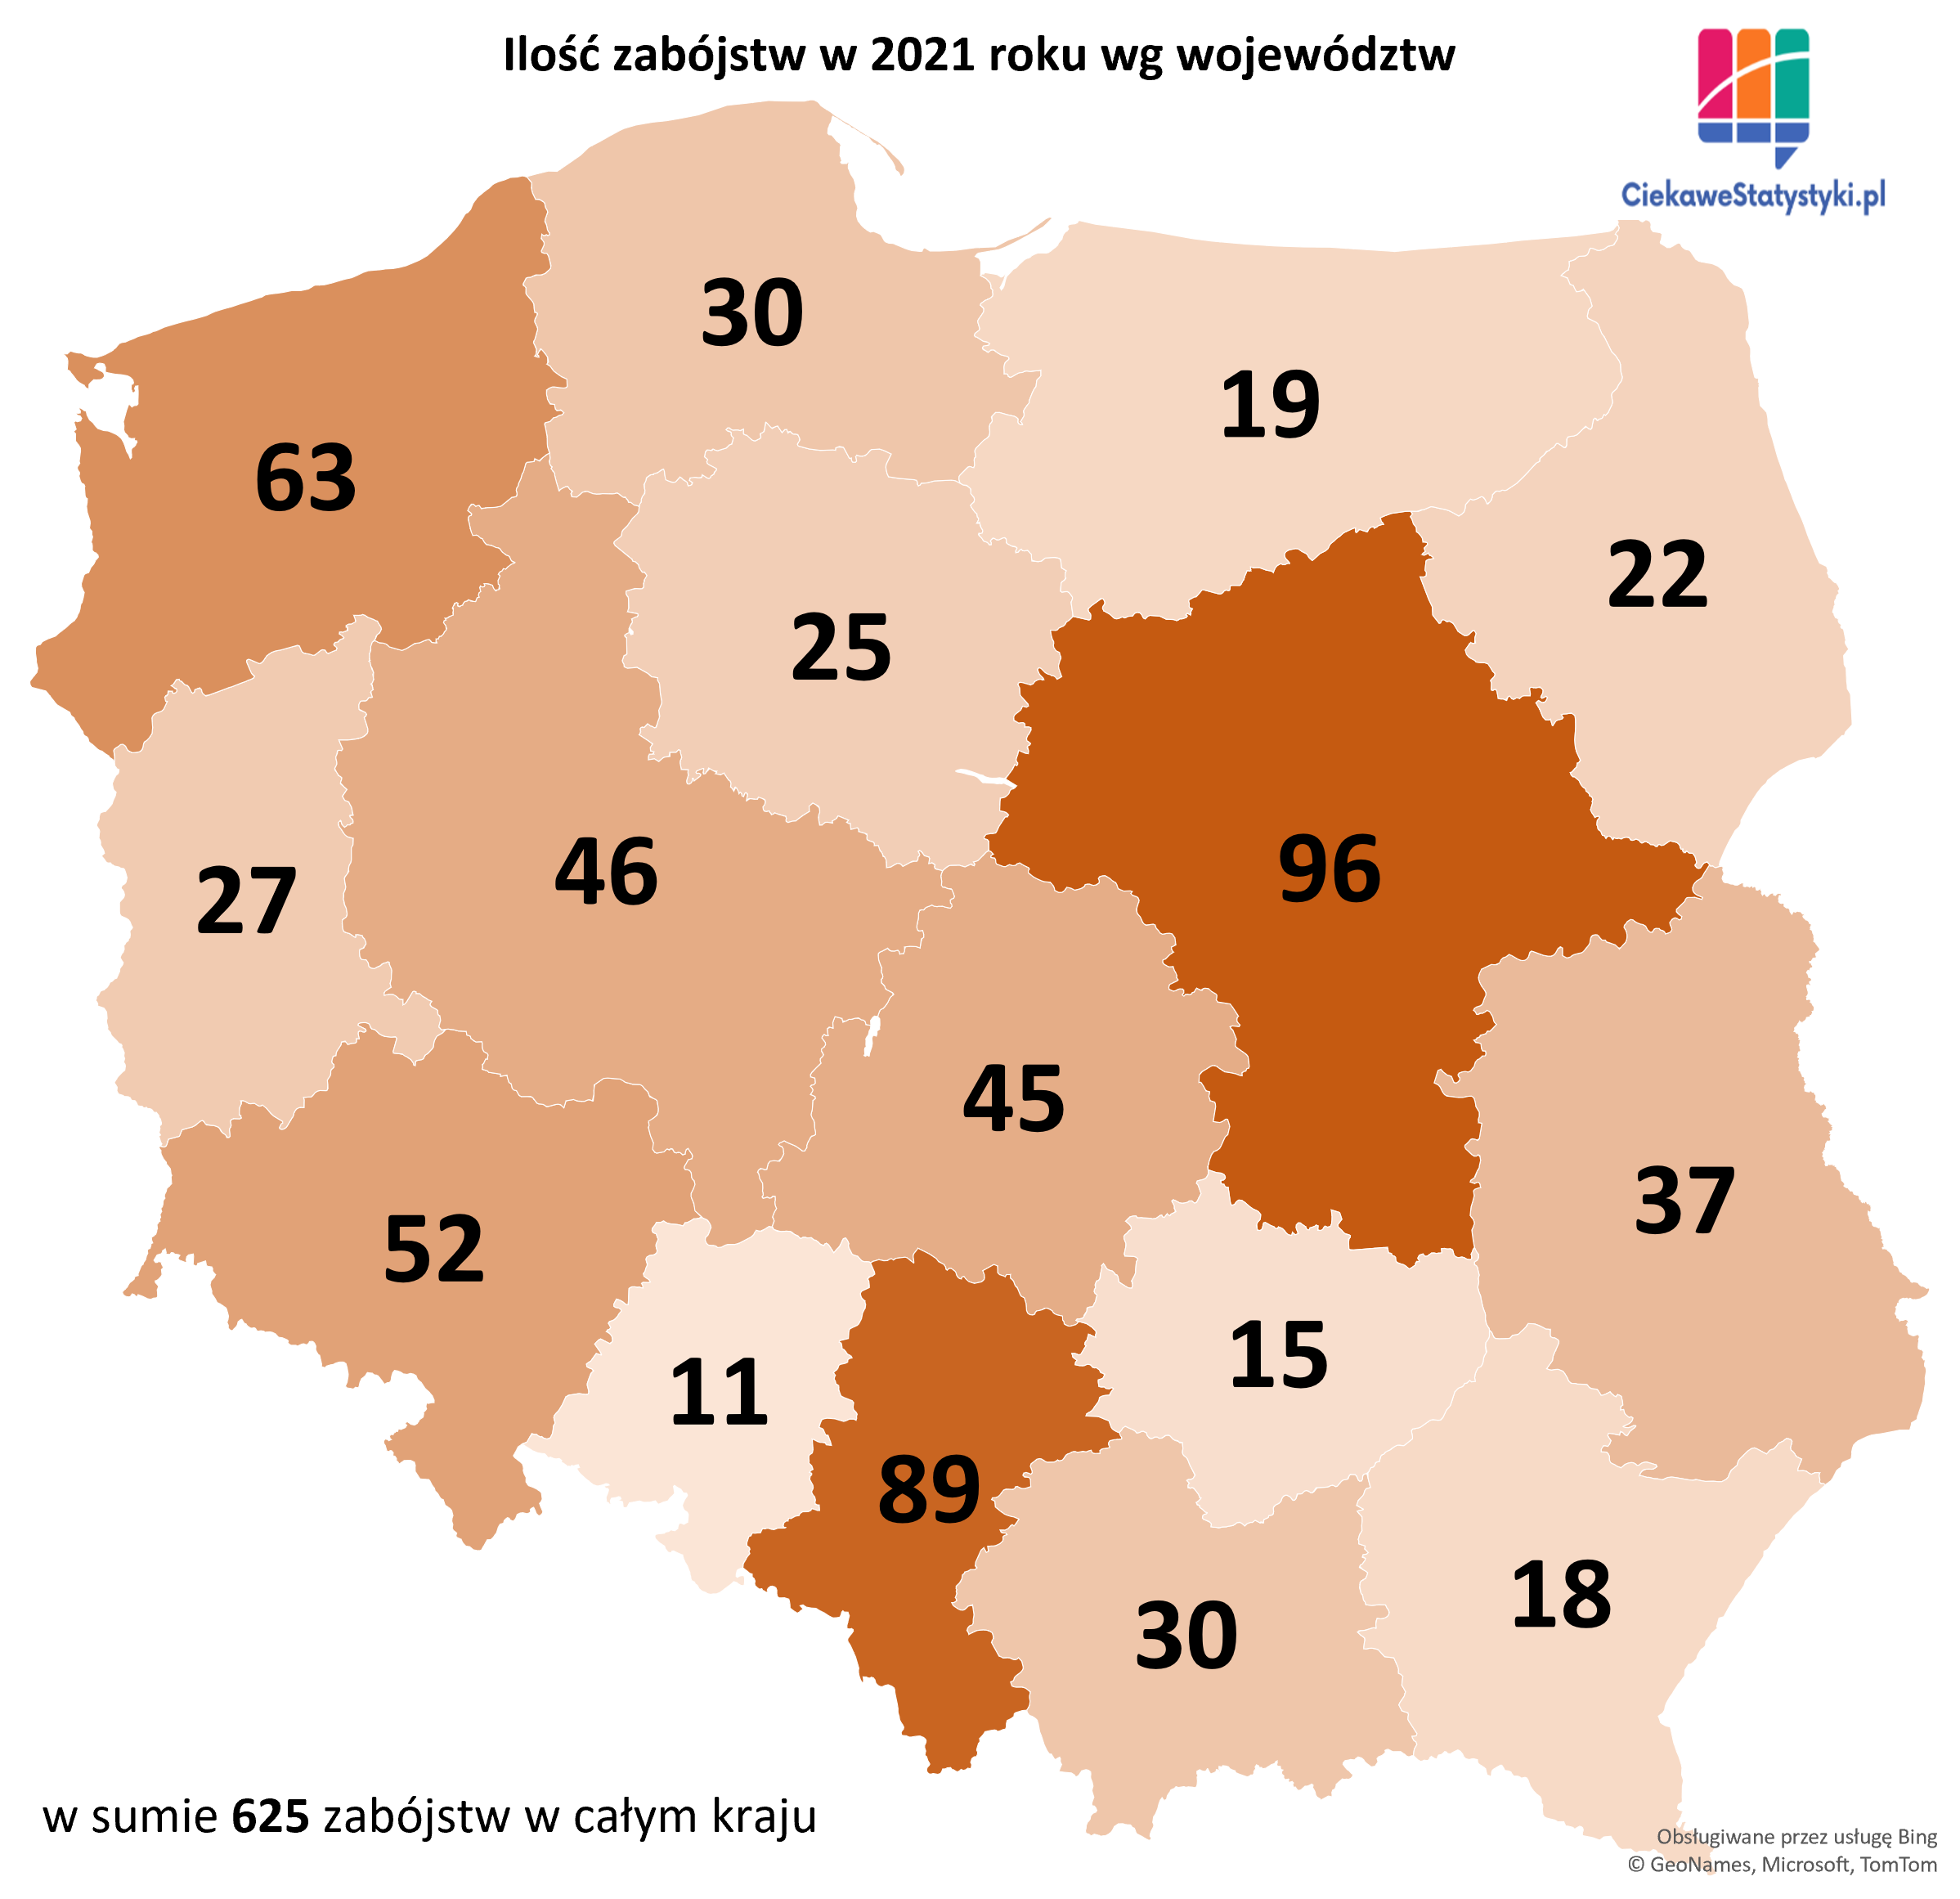 Gdzie popełniono najwięcej zabójstw w Polsce